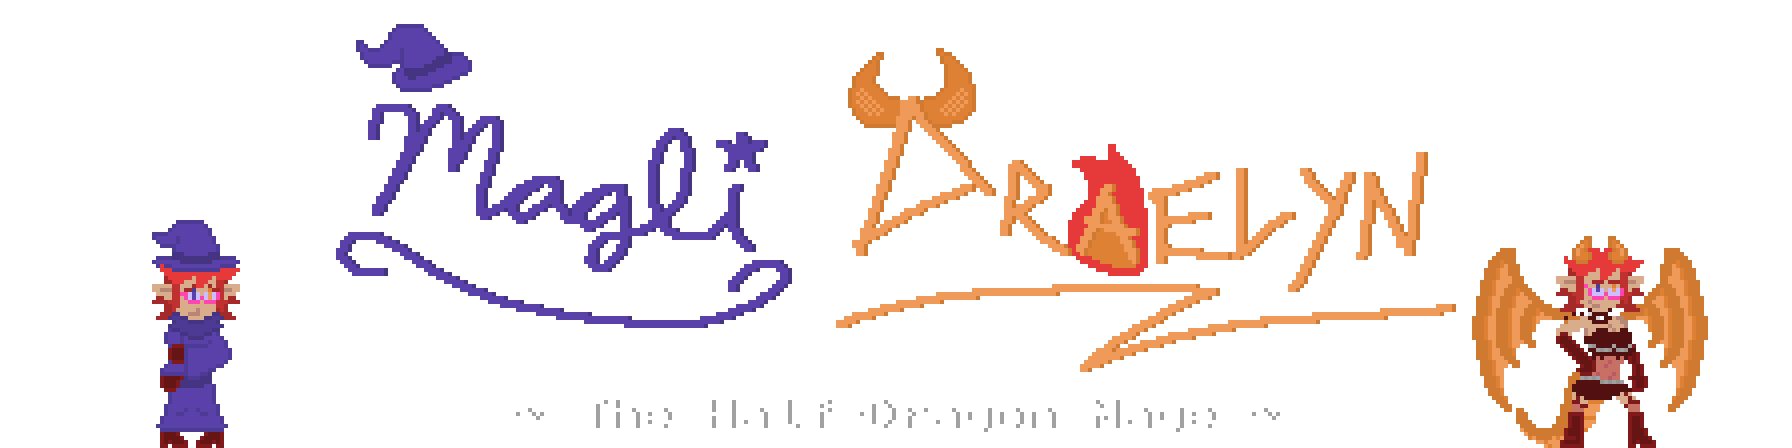 half dragon mage